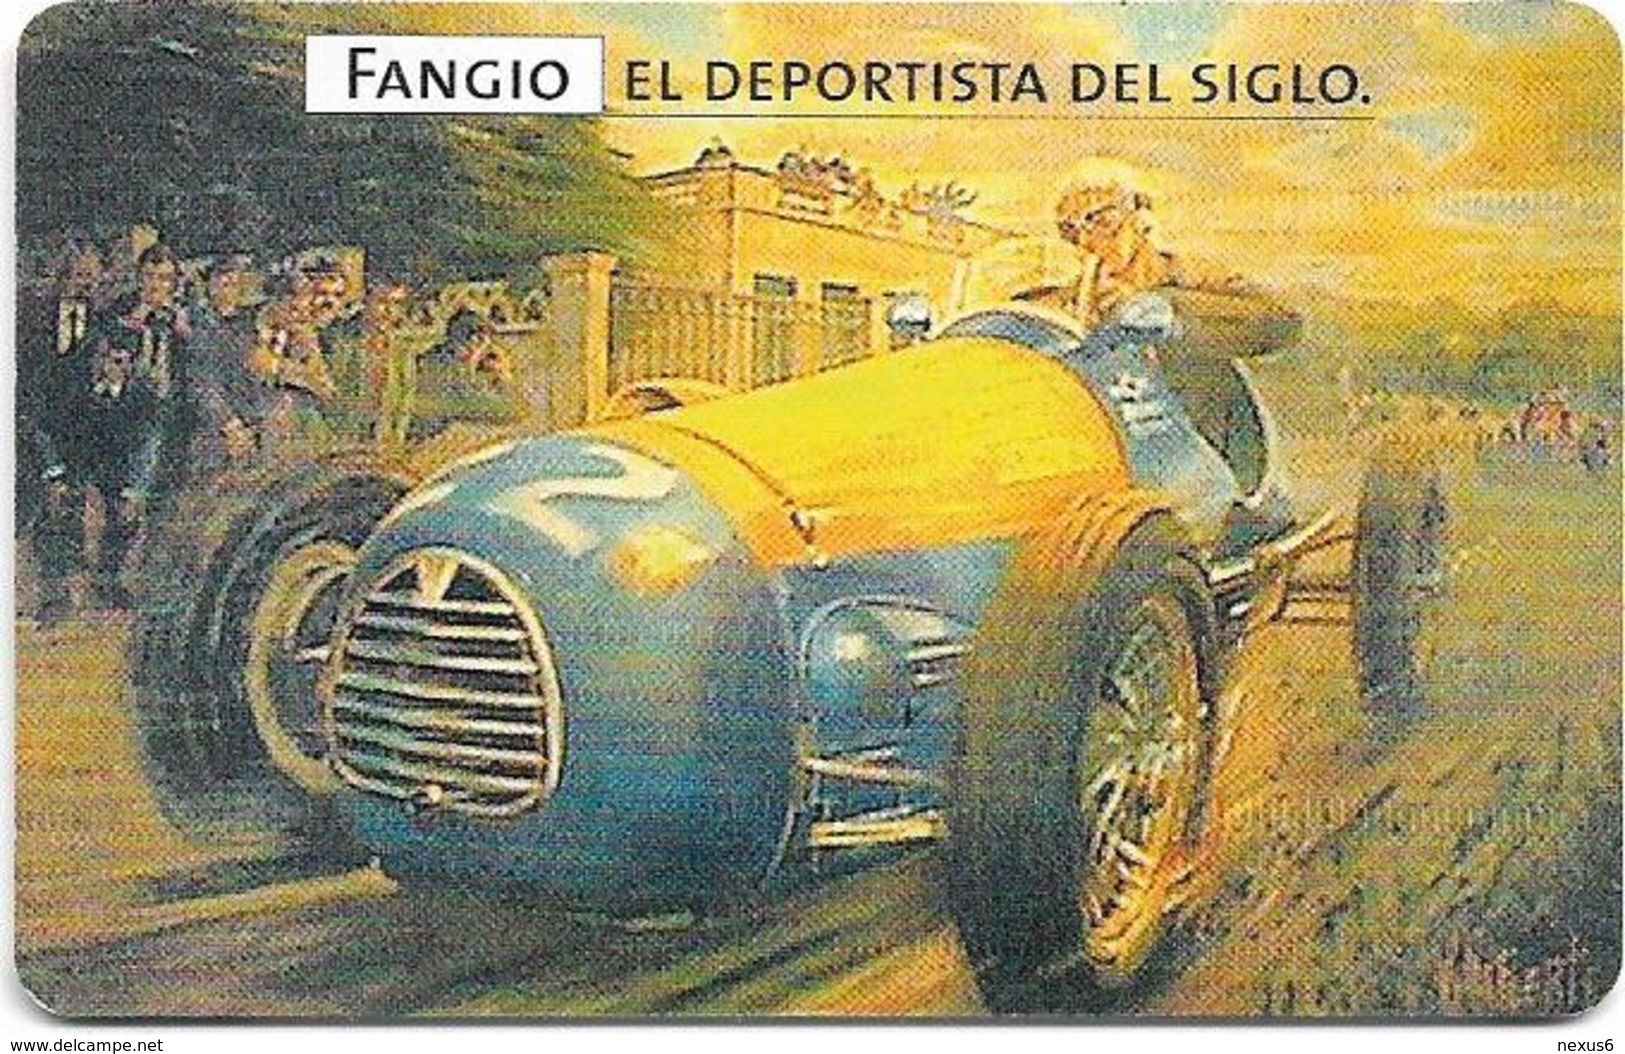 Argentina - Telefónica - Juan Manuel Fangio Cars 4/8, 07.1999 - 50.000ex, Used - Argentina